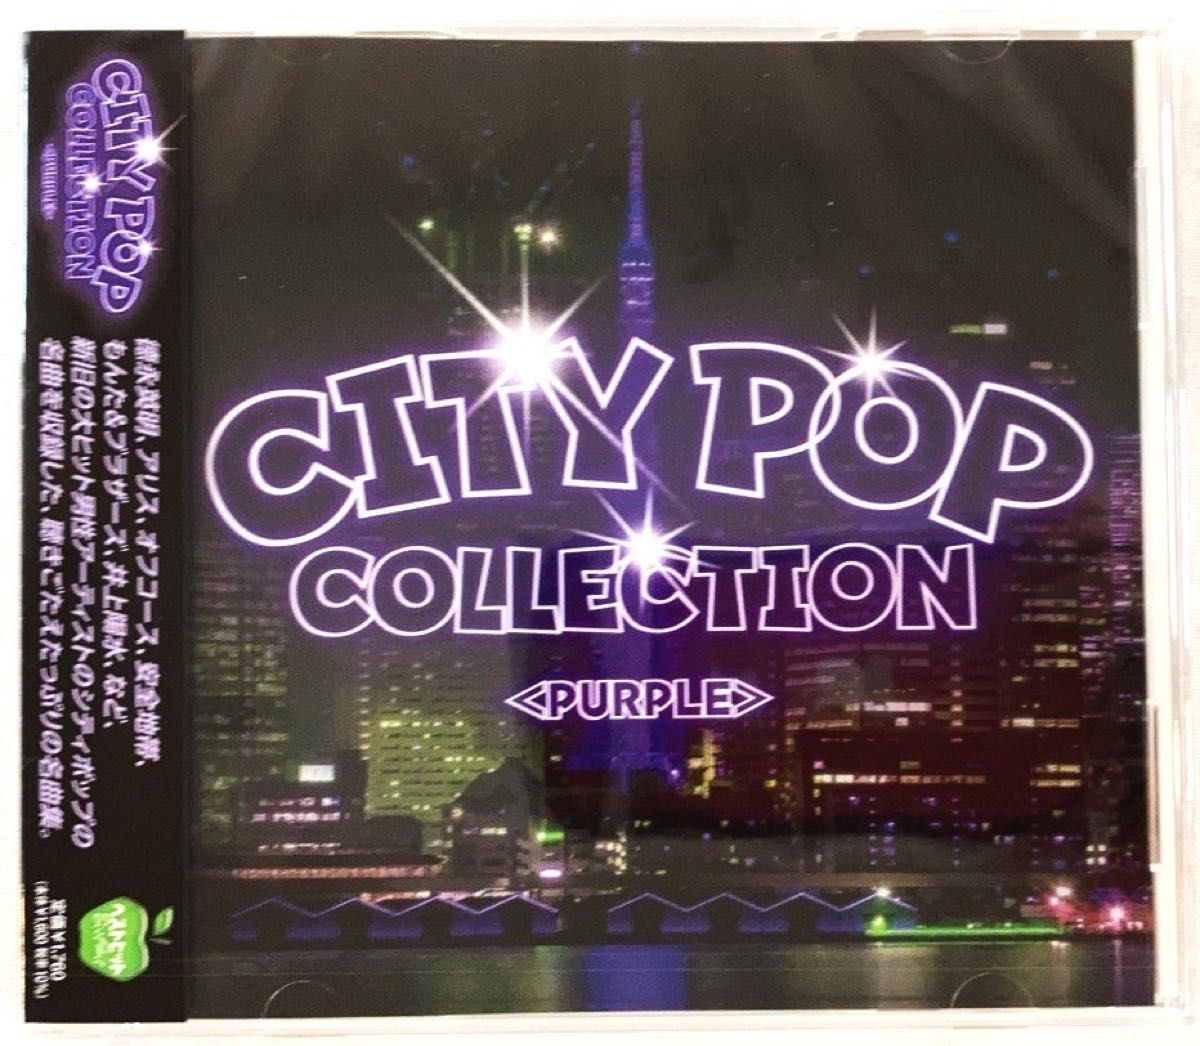 CITY POP COLLECTION PURPLE パープル盤 徳永英明 アリス オフコース もんたアンドブラザーズ CD 新品